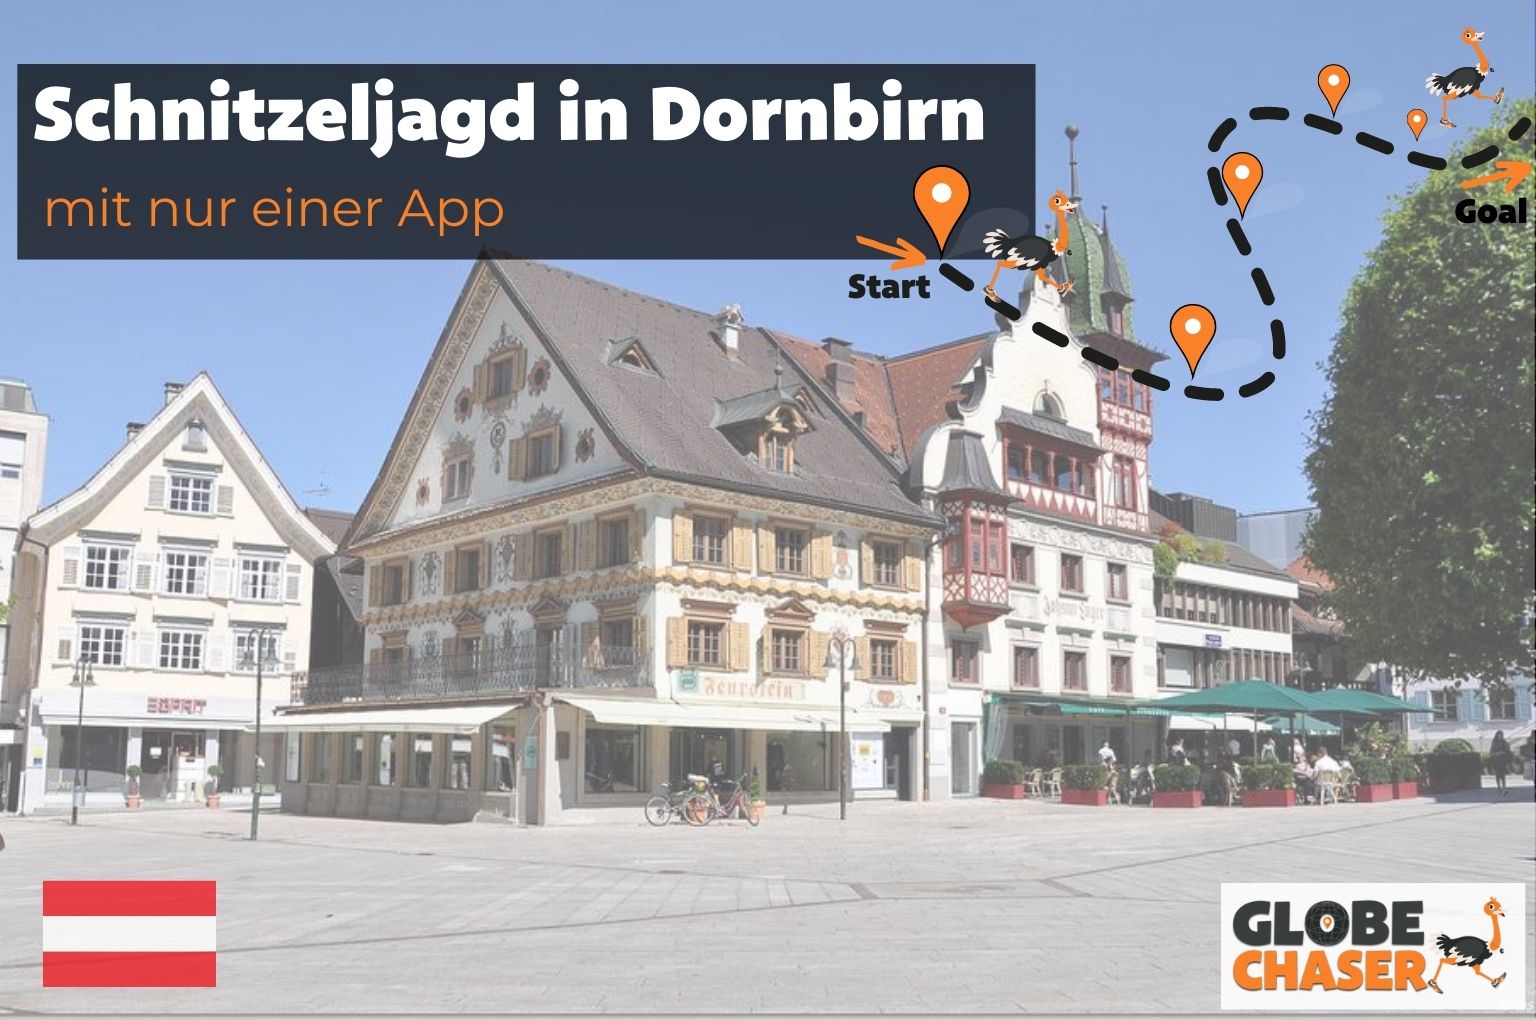 Schnitzeljagd in Dornbirn mit App - Globe Chaser Erlebnisse Austria